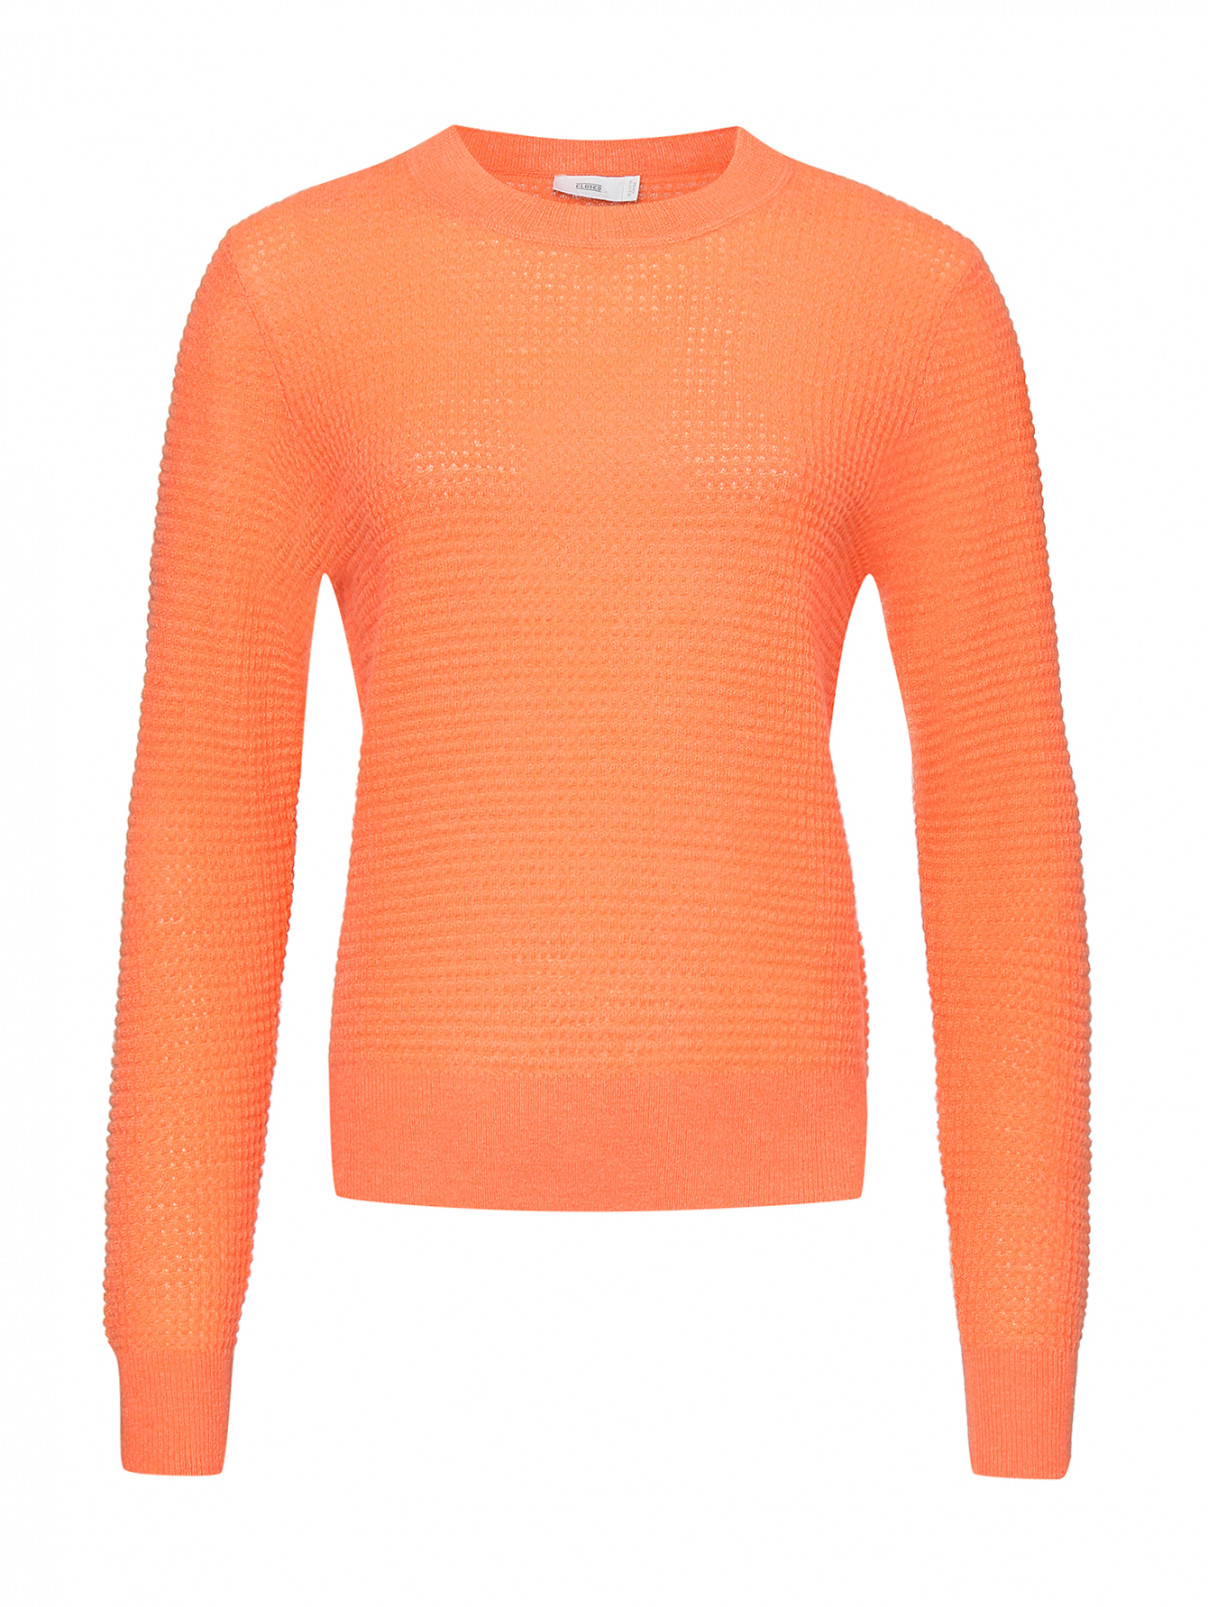 Джемпер из смешанной шерсти фактурной вязки CLOSED  –  Общий вид  – Цвет:  Оранжевый